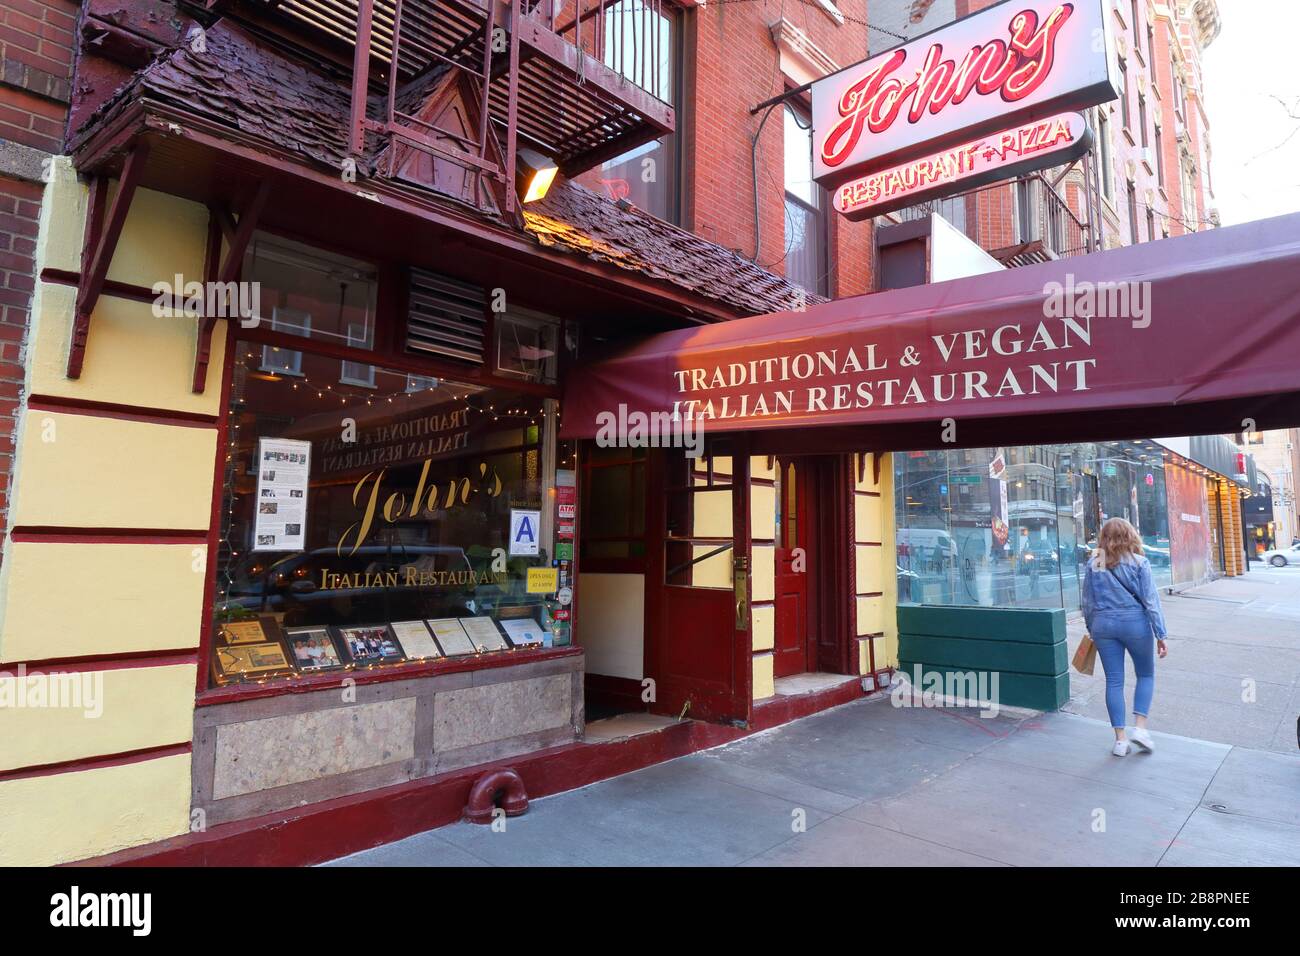 John's of 12. Street, 302 E 12. St, New York. NYC-Schaufensterfoto eines italienischen Restaurants im East Village-Viertel von Manhattan. Stockfoto